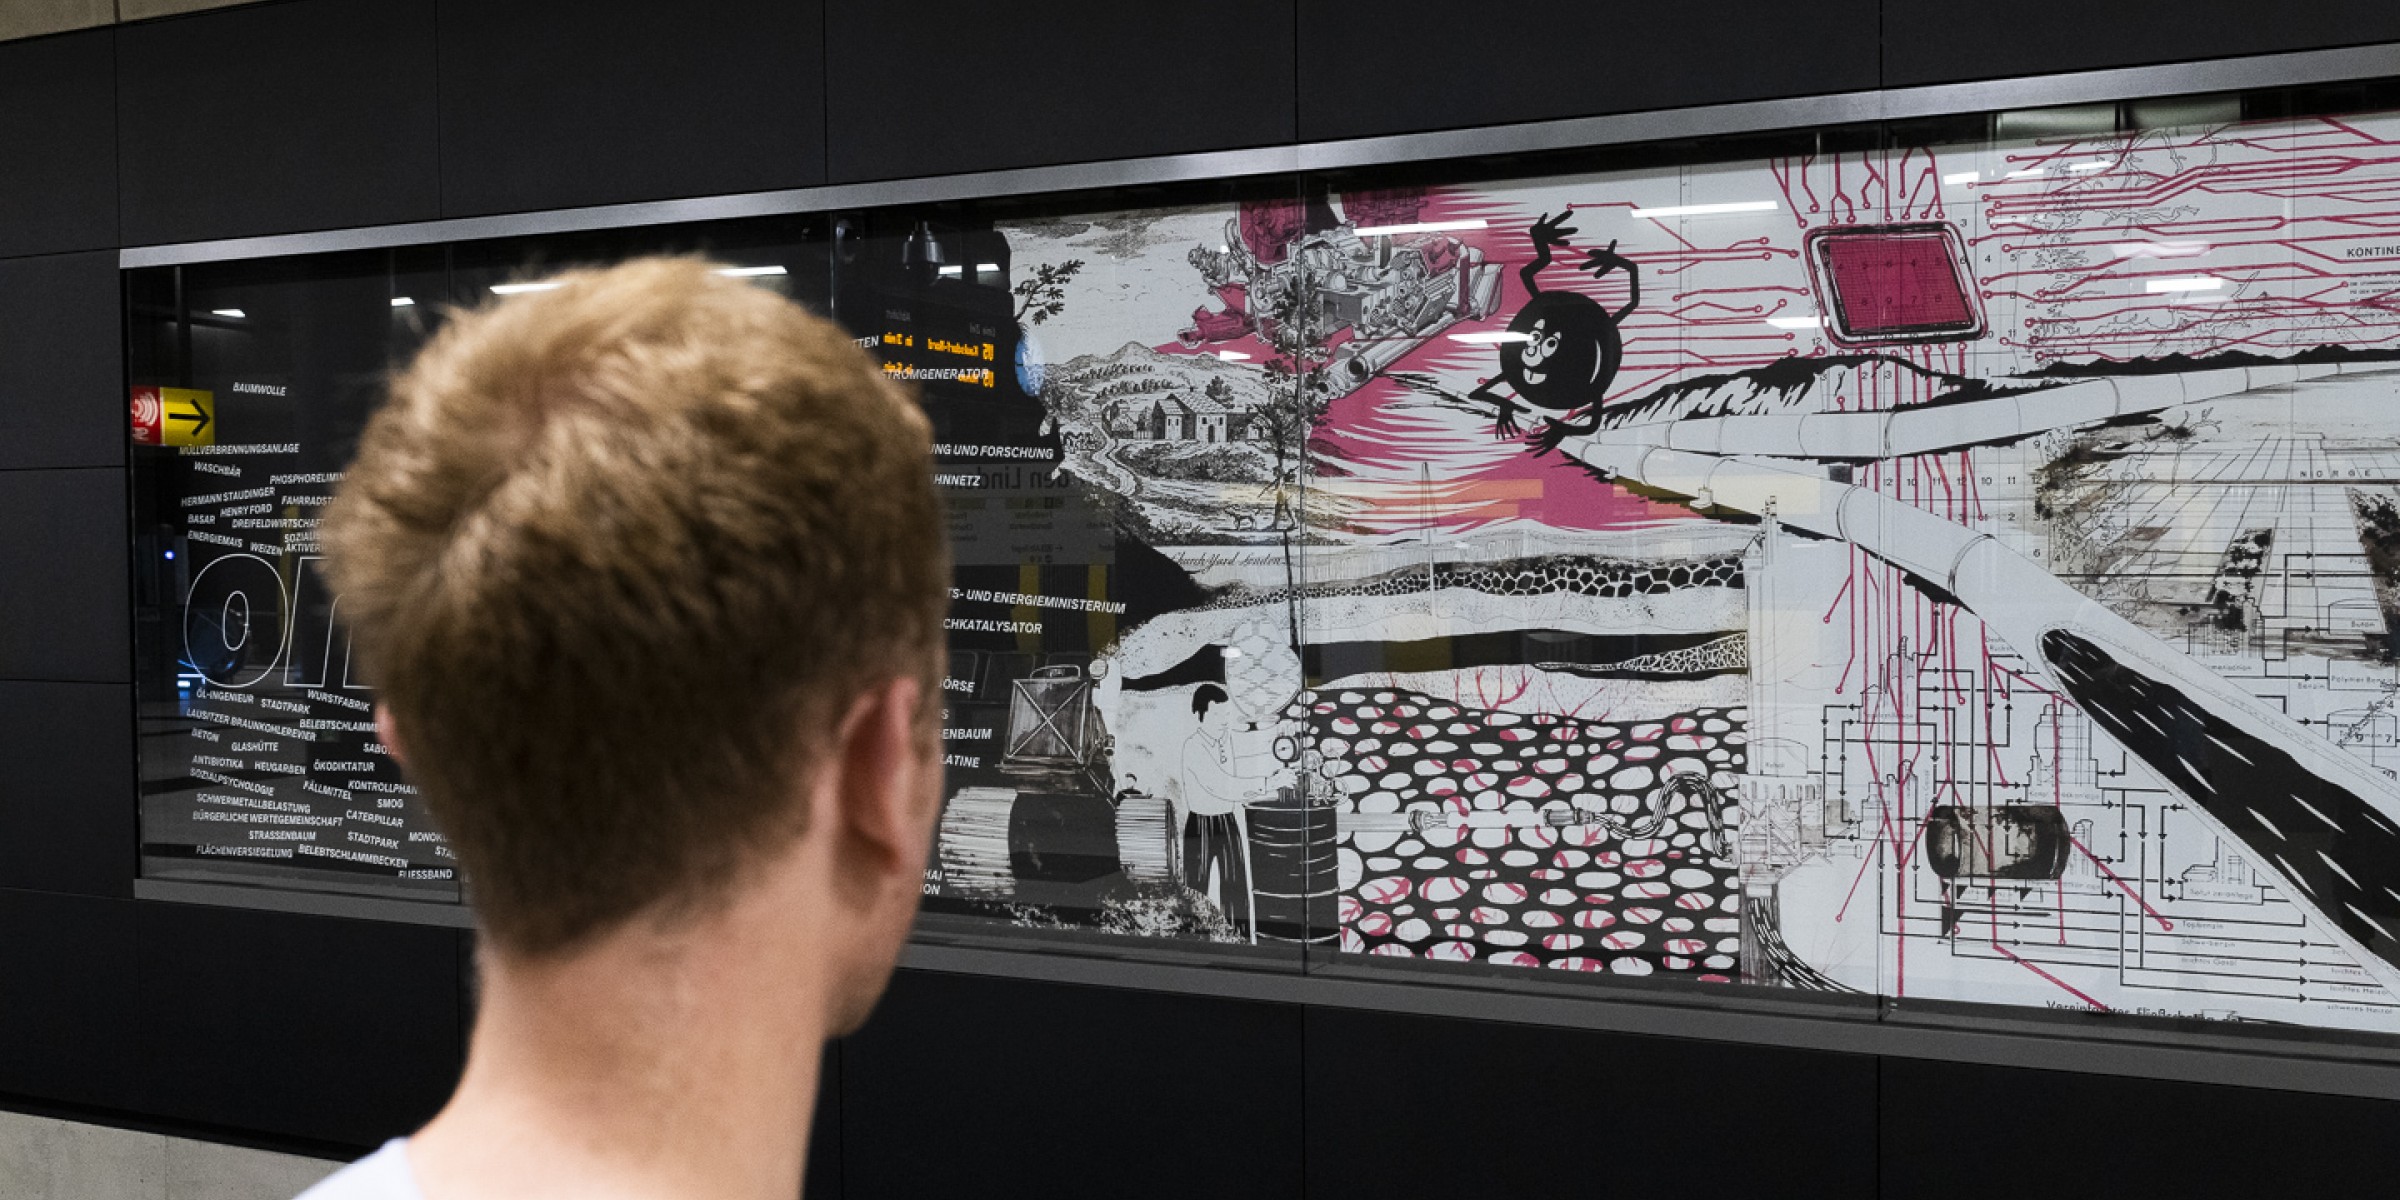 thegreeneyl ausstellungs design Humboldt Universität bahnhof der wissenschaften unter den linden ubahn medienwand grafik